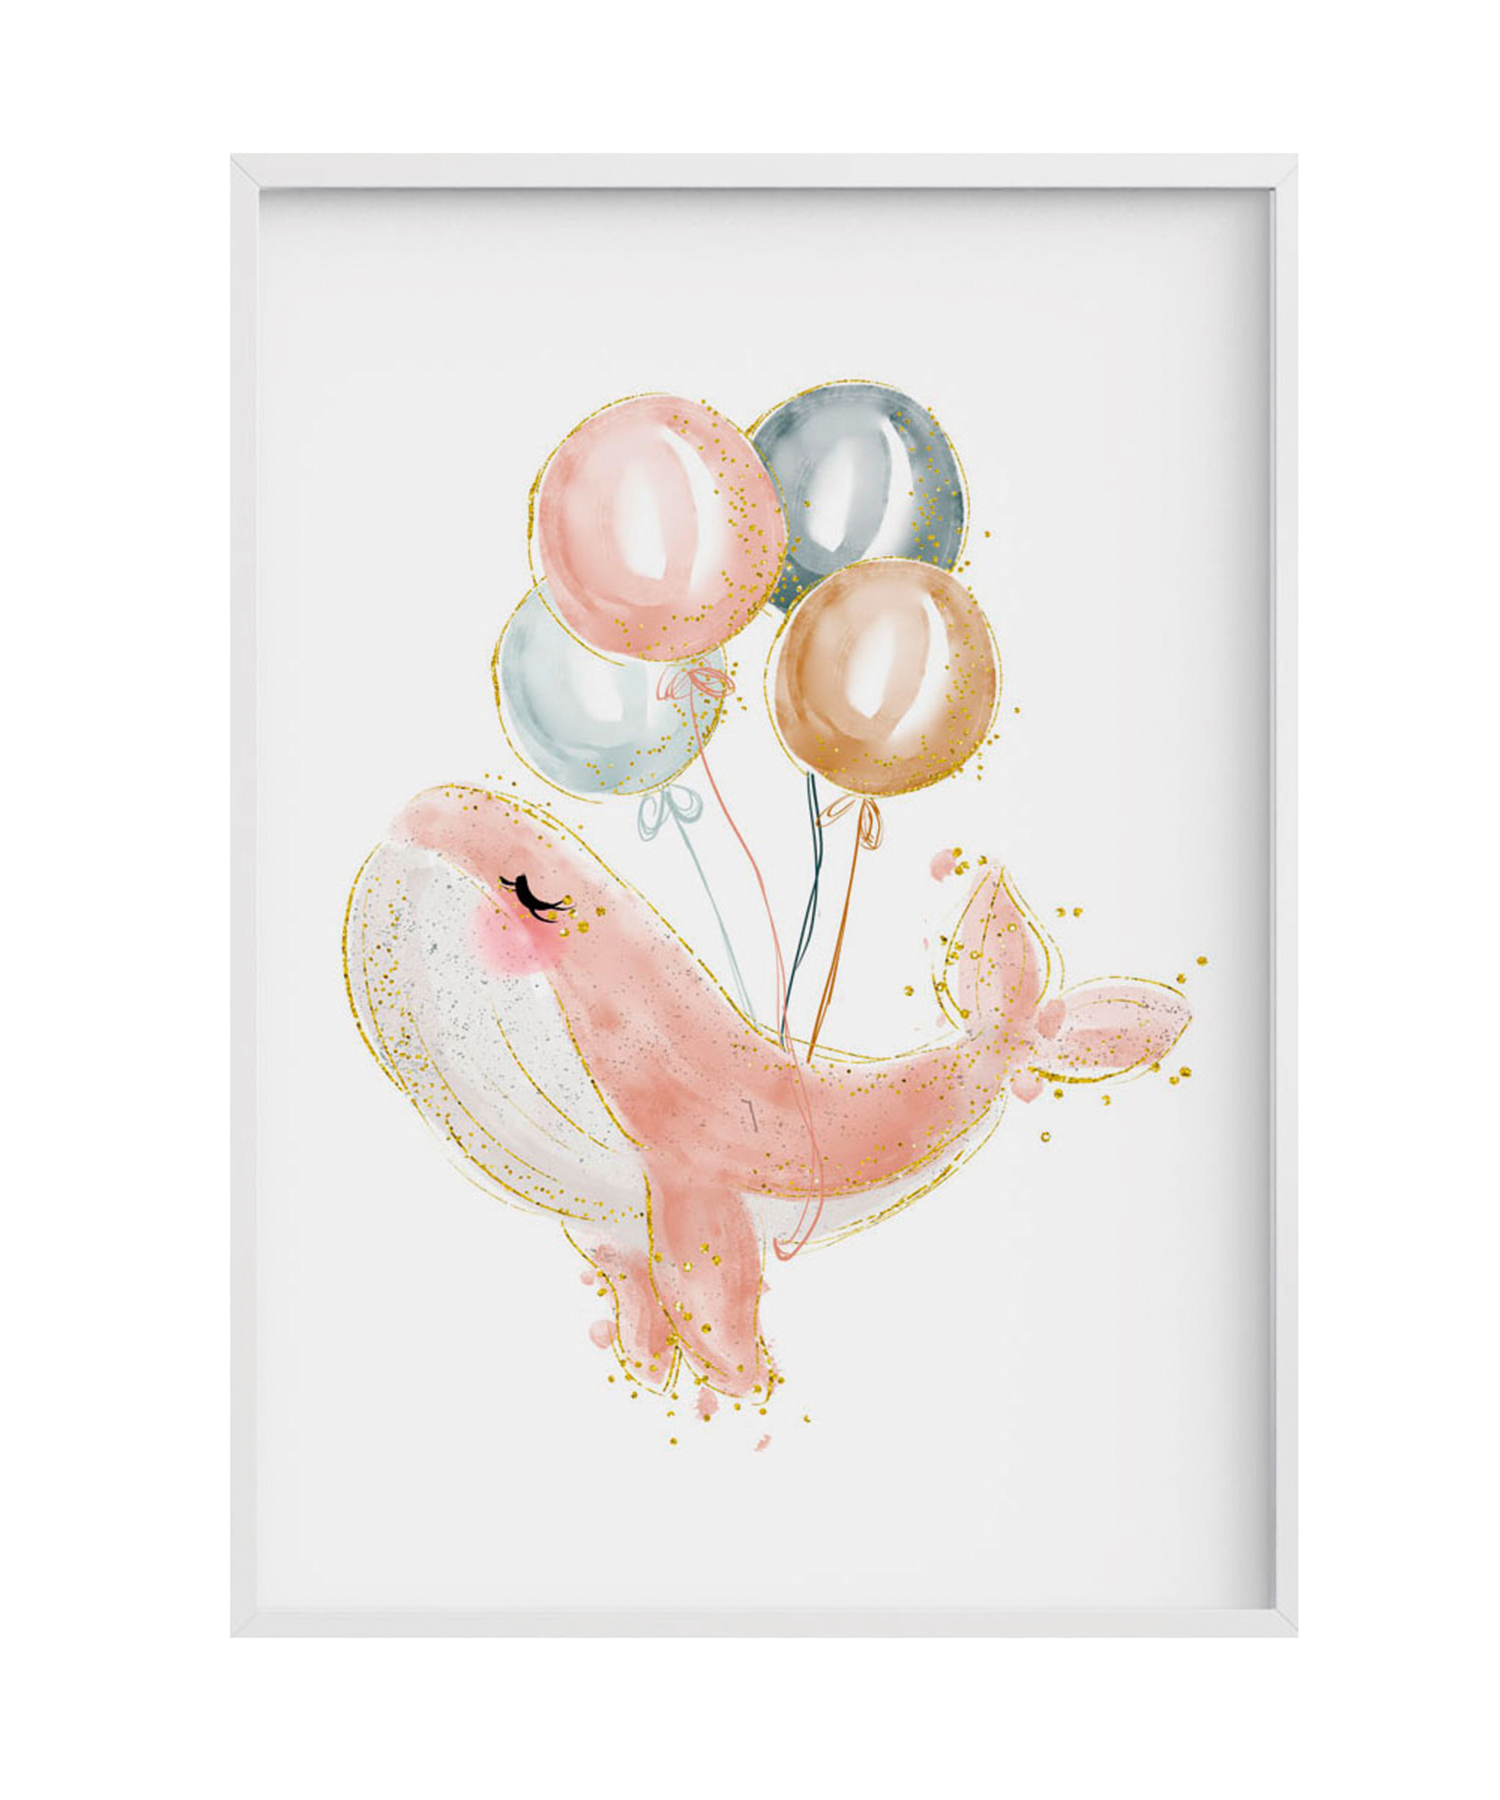 Impression de Baleine rose ballon encadrée en bois blanc 43X33 cm